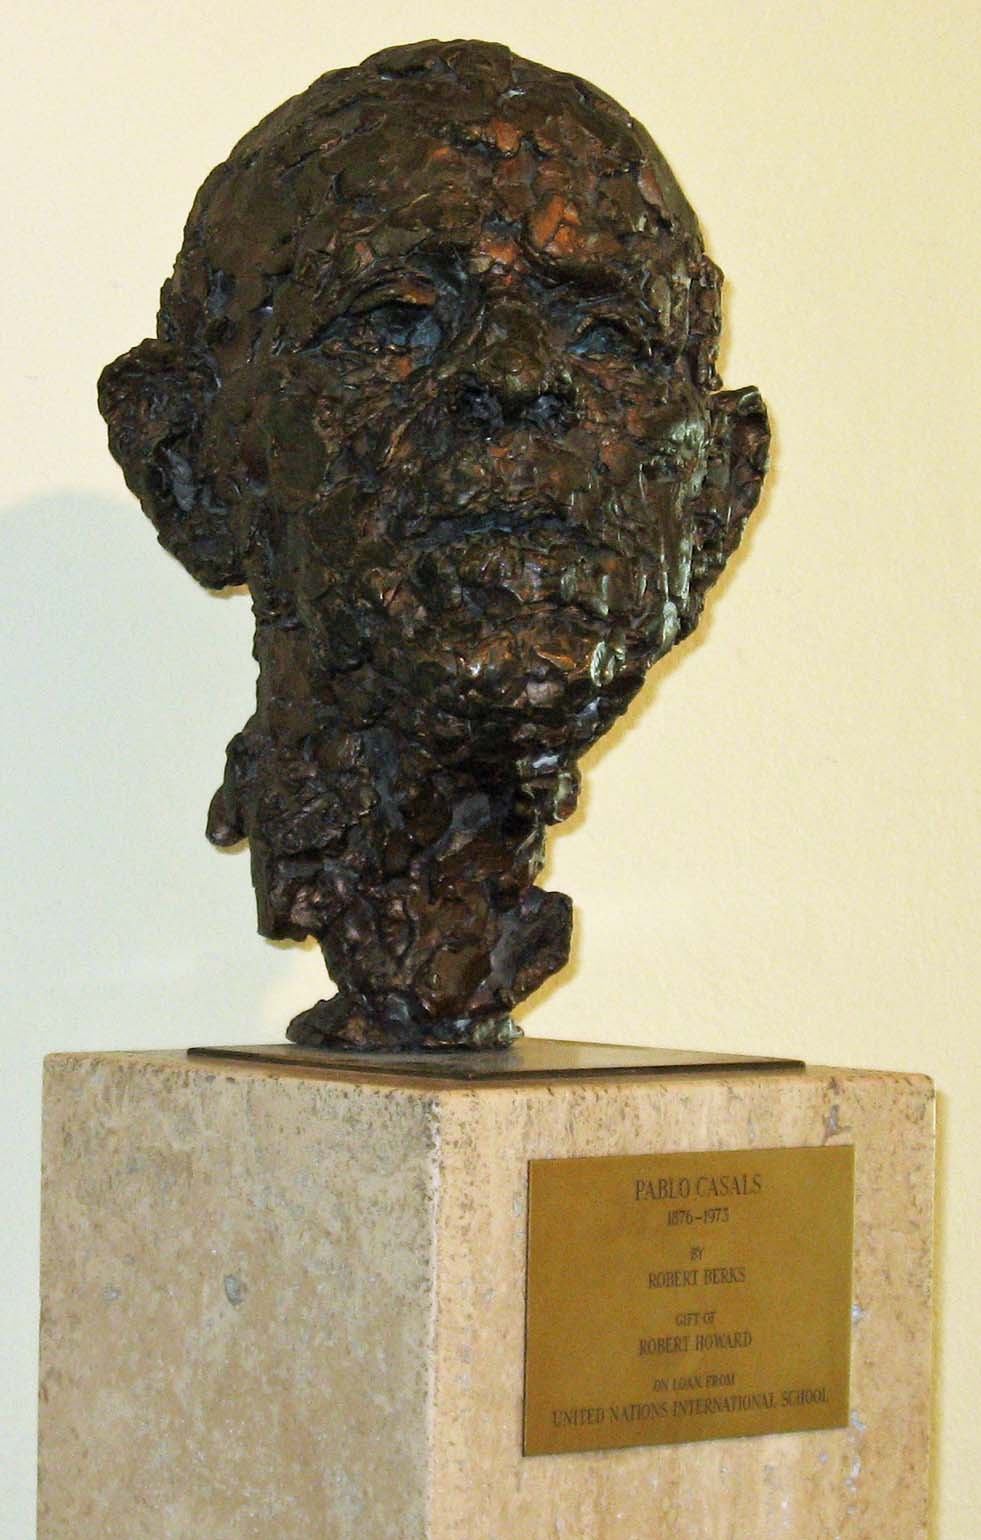 Busto de Pablo Casals, UNNY139L, 1977, En préstamo permanente de la Escuela Internacional de la ONU